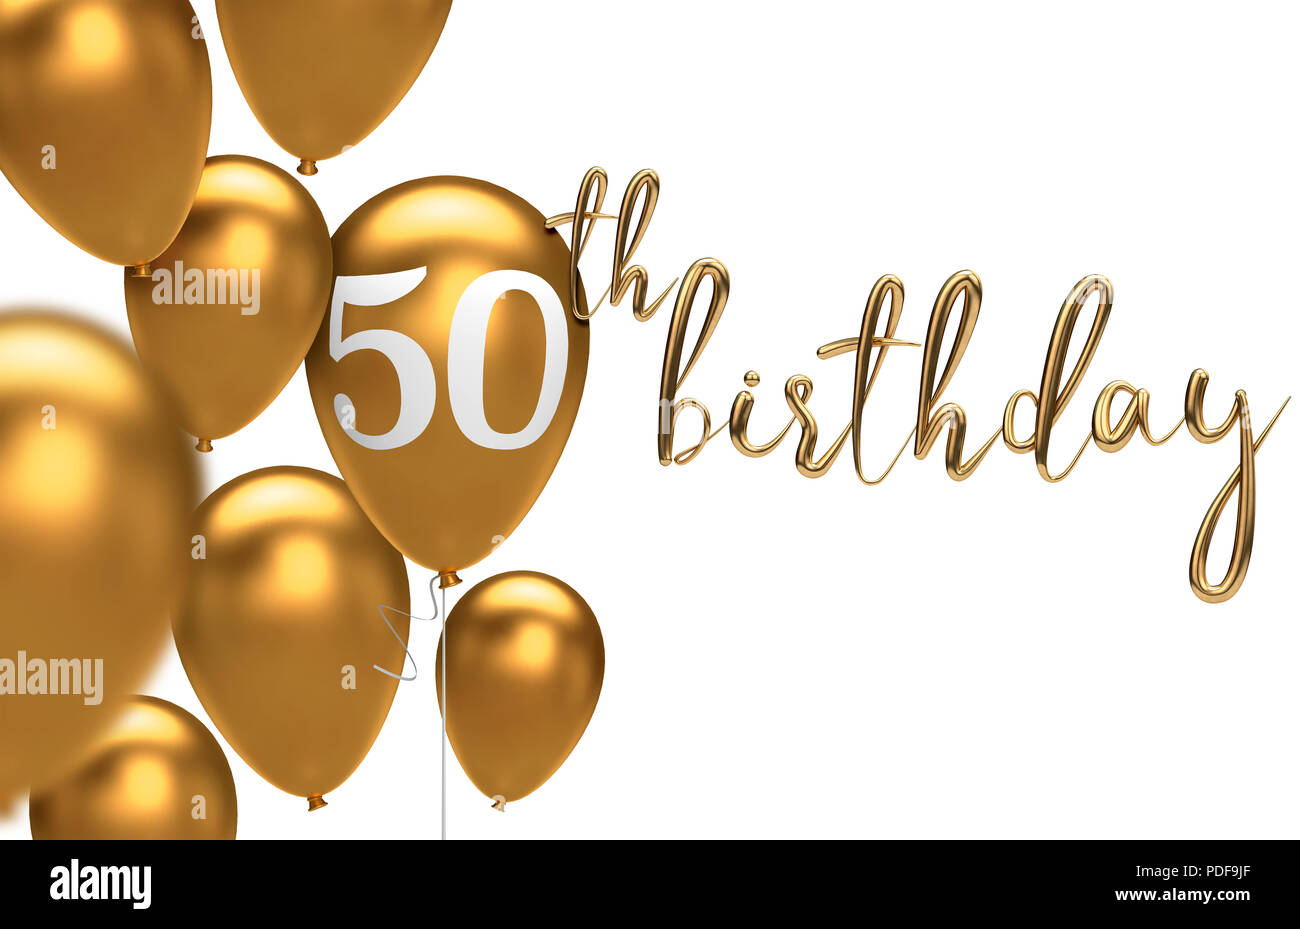 Chúc mừng sinh nhật lần thứ 50! Hãy cùng nhau chia sẻ niềm vui với bóng bay đầy màu sắc hạnh phúc. Hình nền 50th birthday balloon sẽ giúp bạn tạo một không gian đáng nhớ cho bữa tiệc sinh nhật của người thân và bạn bè.